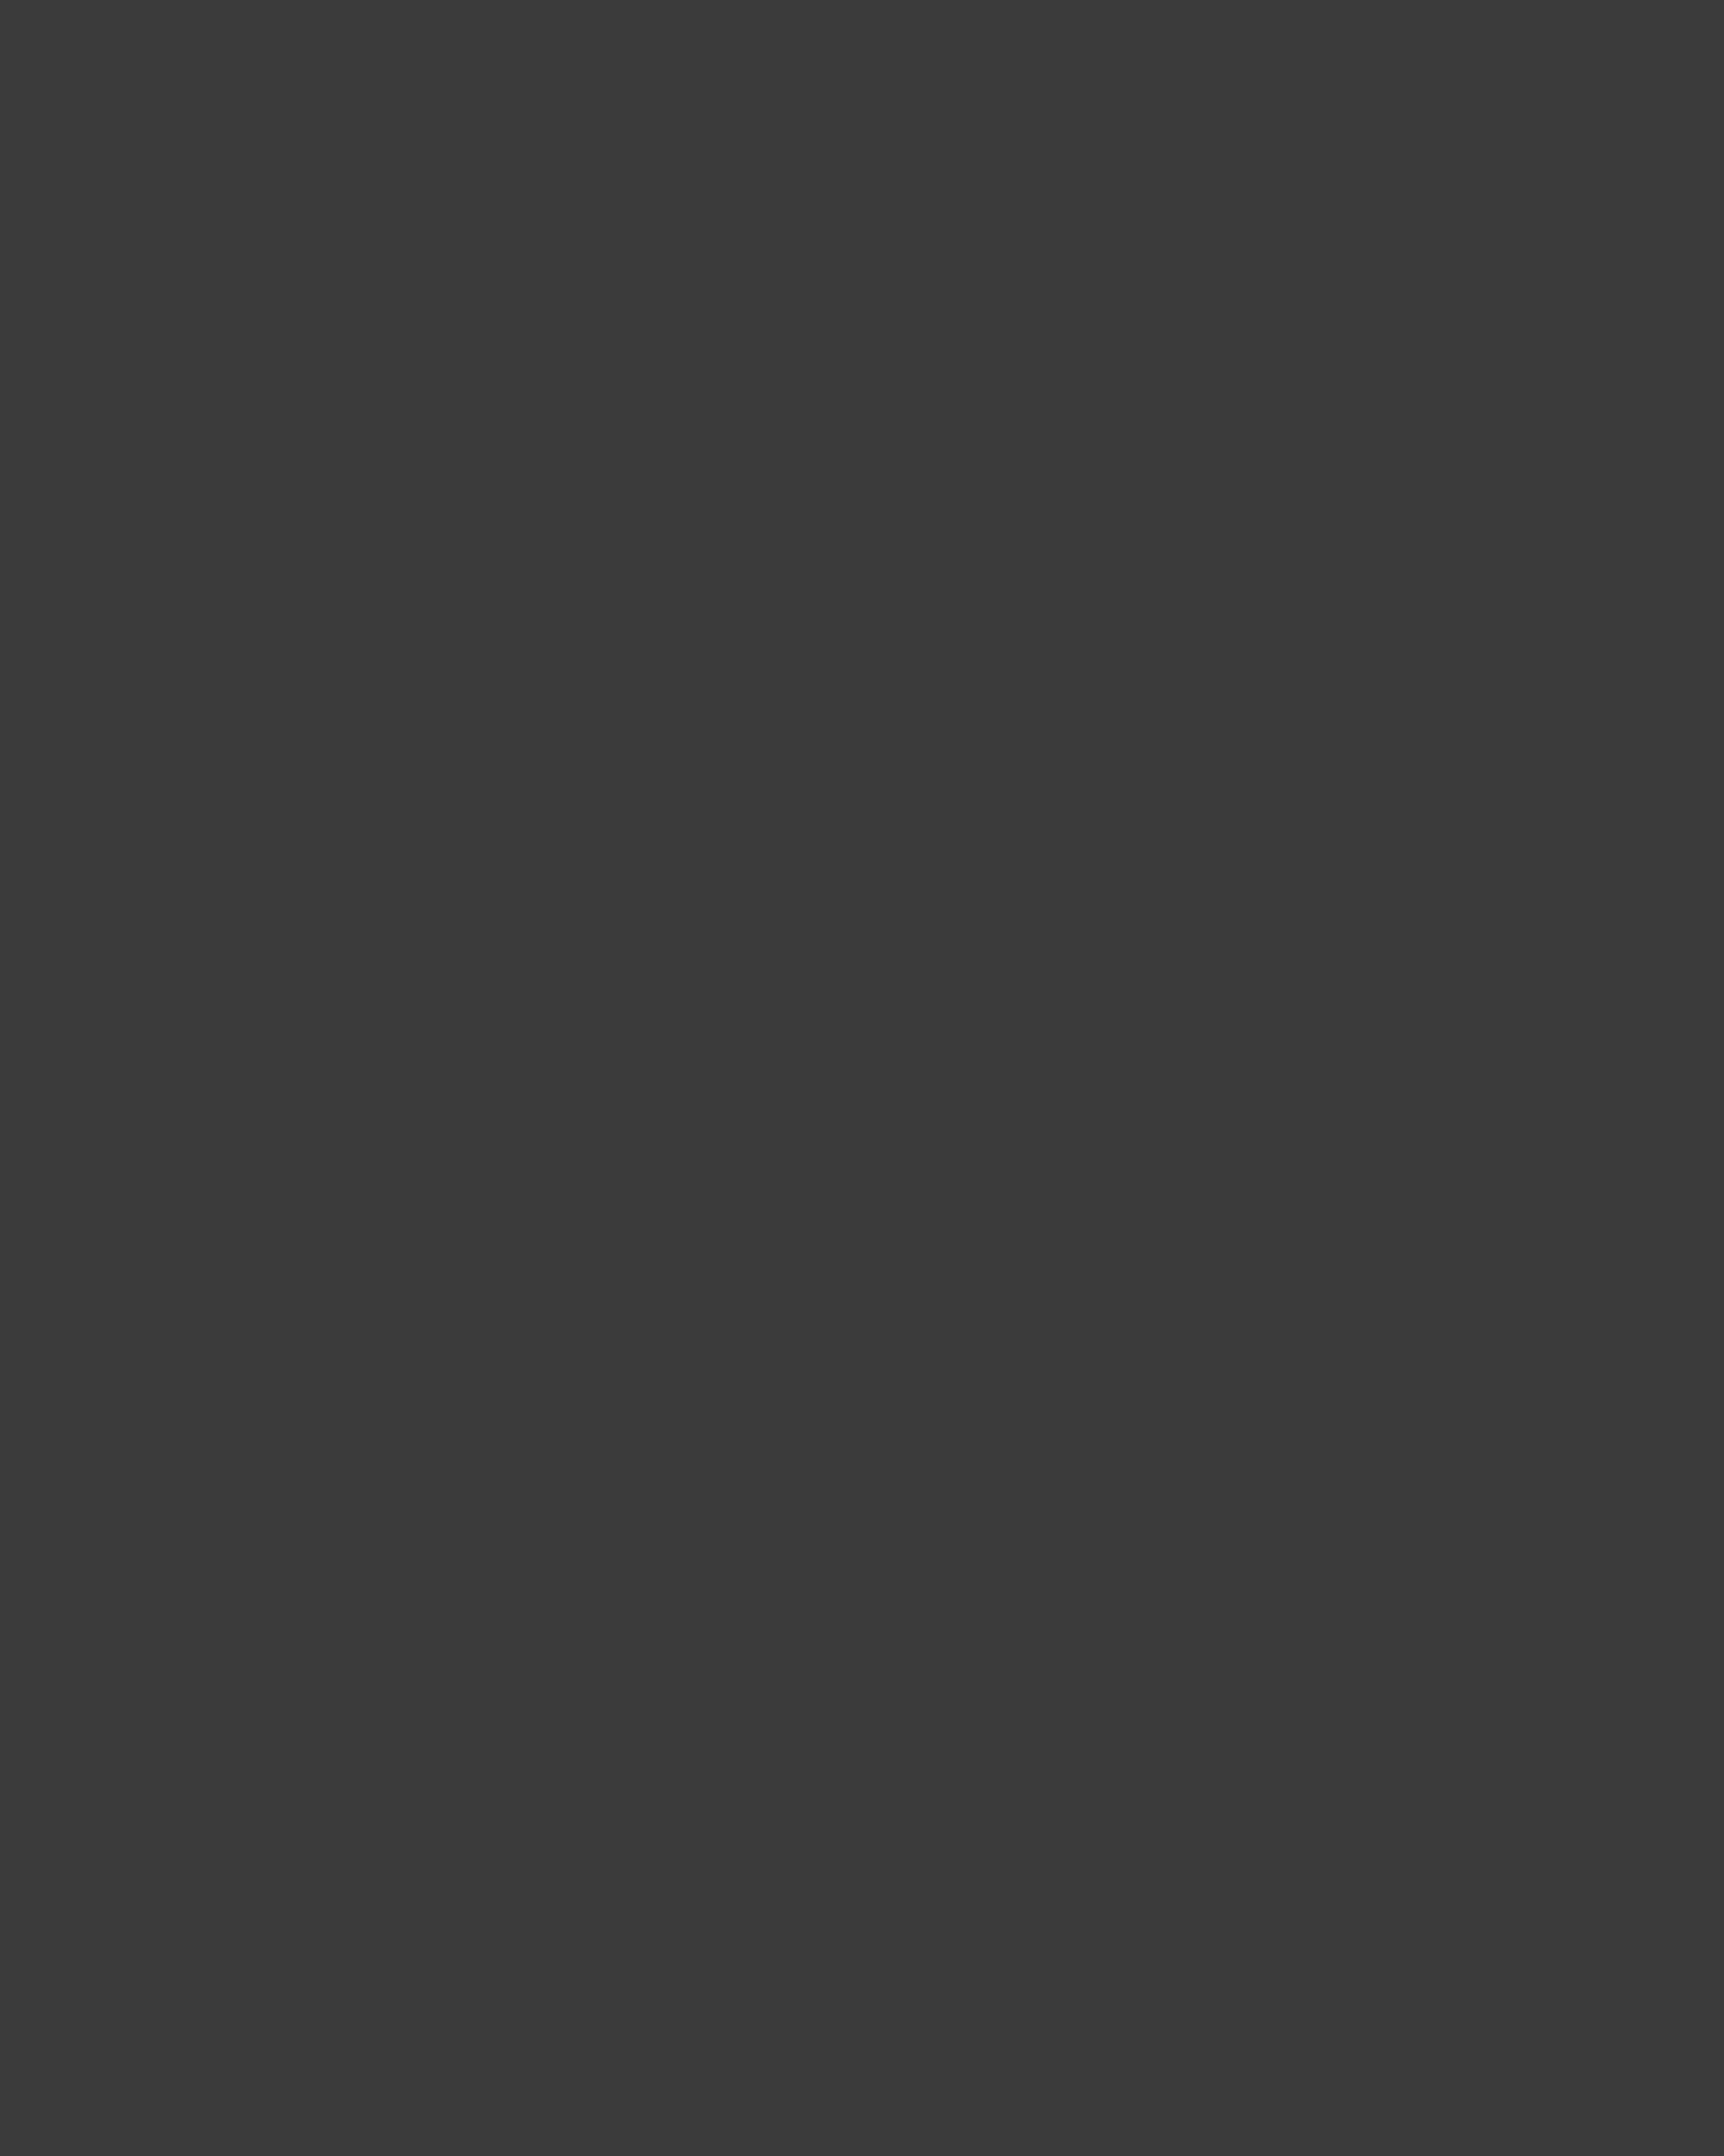 Пианист Даниил Трифонов и дирижер Валерий Гергиев (на втором плане) во время выступления на гала-концерте лауреатов XIV Международного конкурса имени П.И. Чайковского. Санкт-Петербург, 2011 год. Фотография: Руслан Шамуков / ИТАР-ТАСС